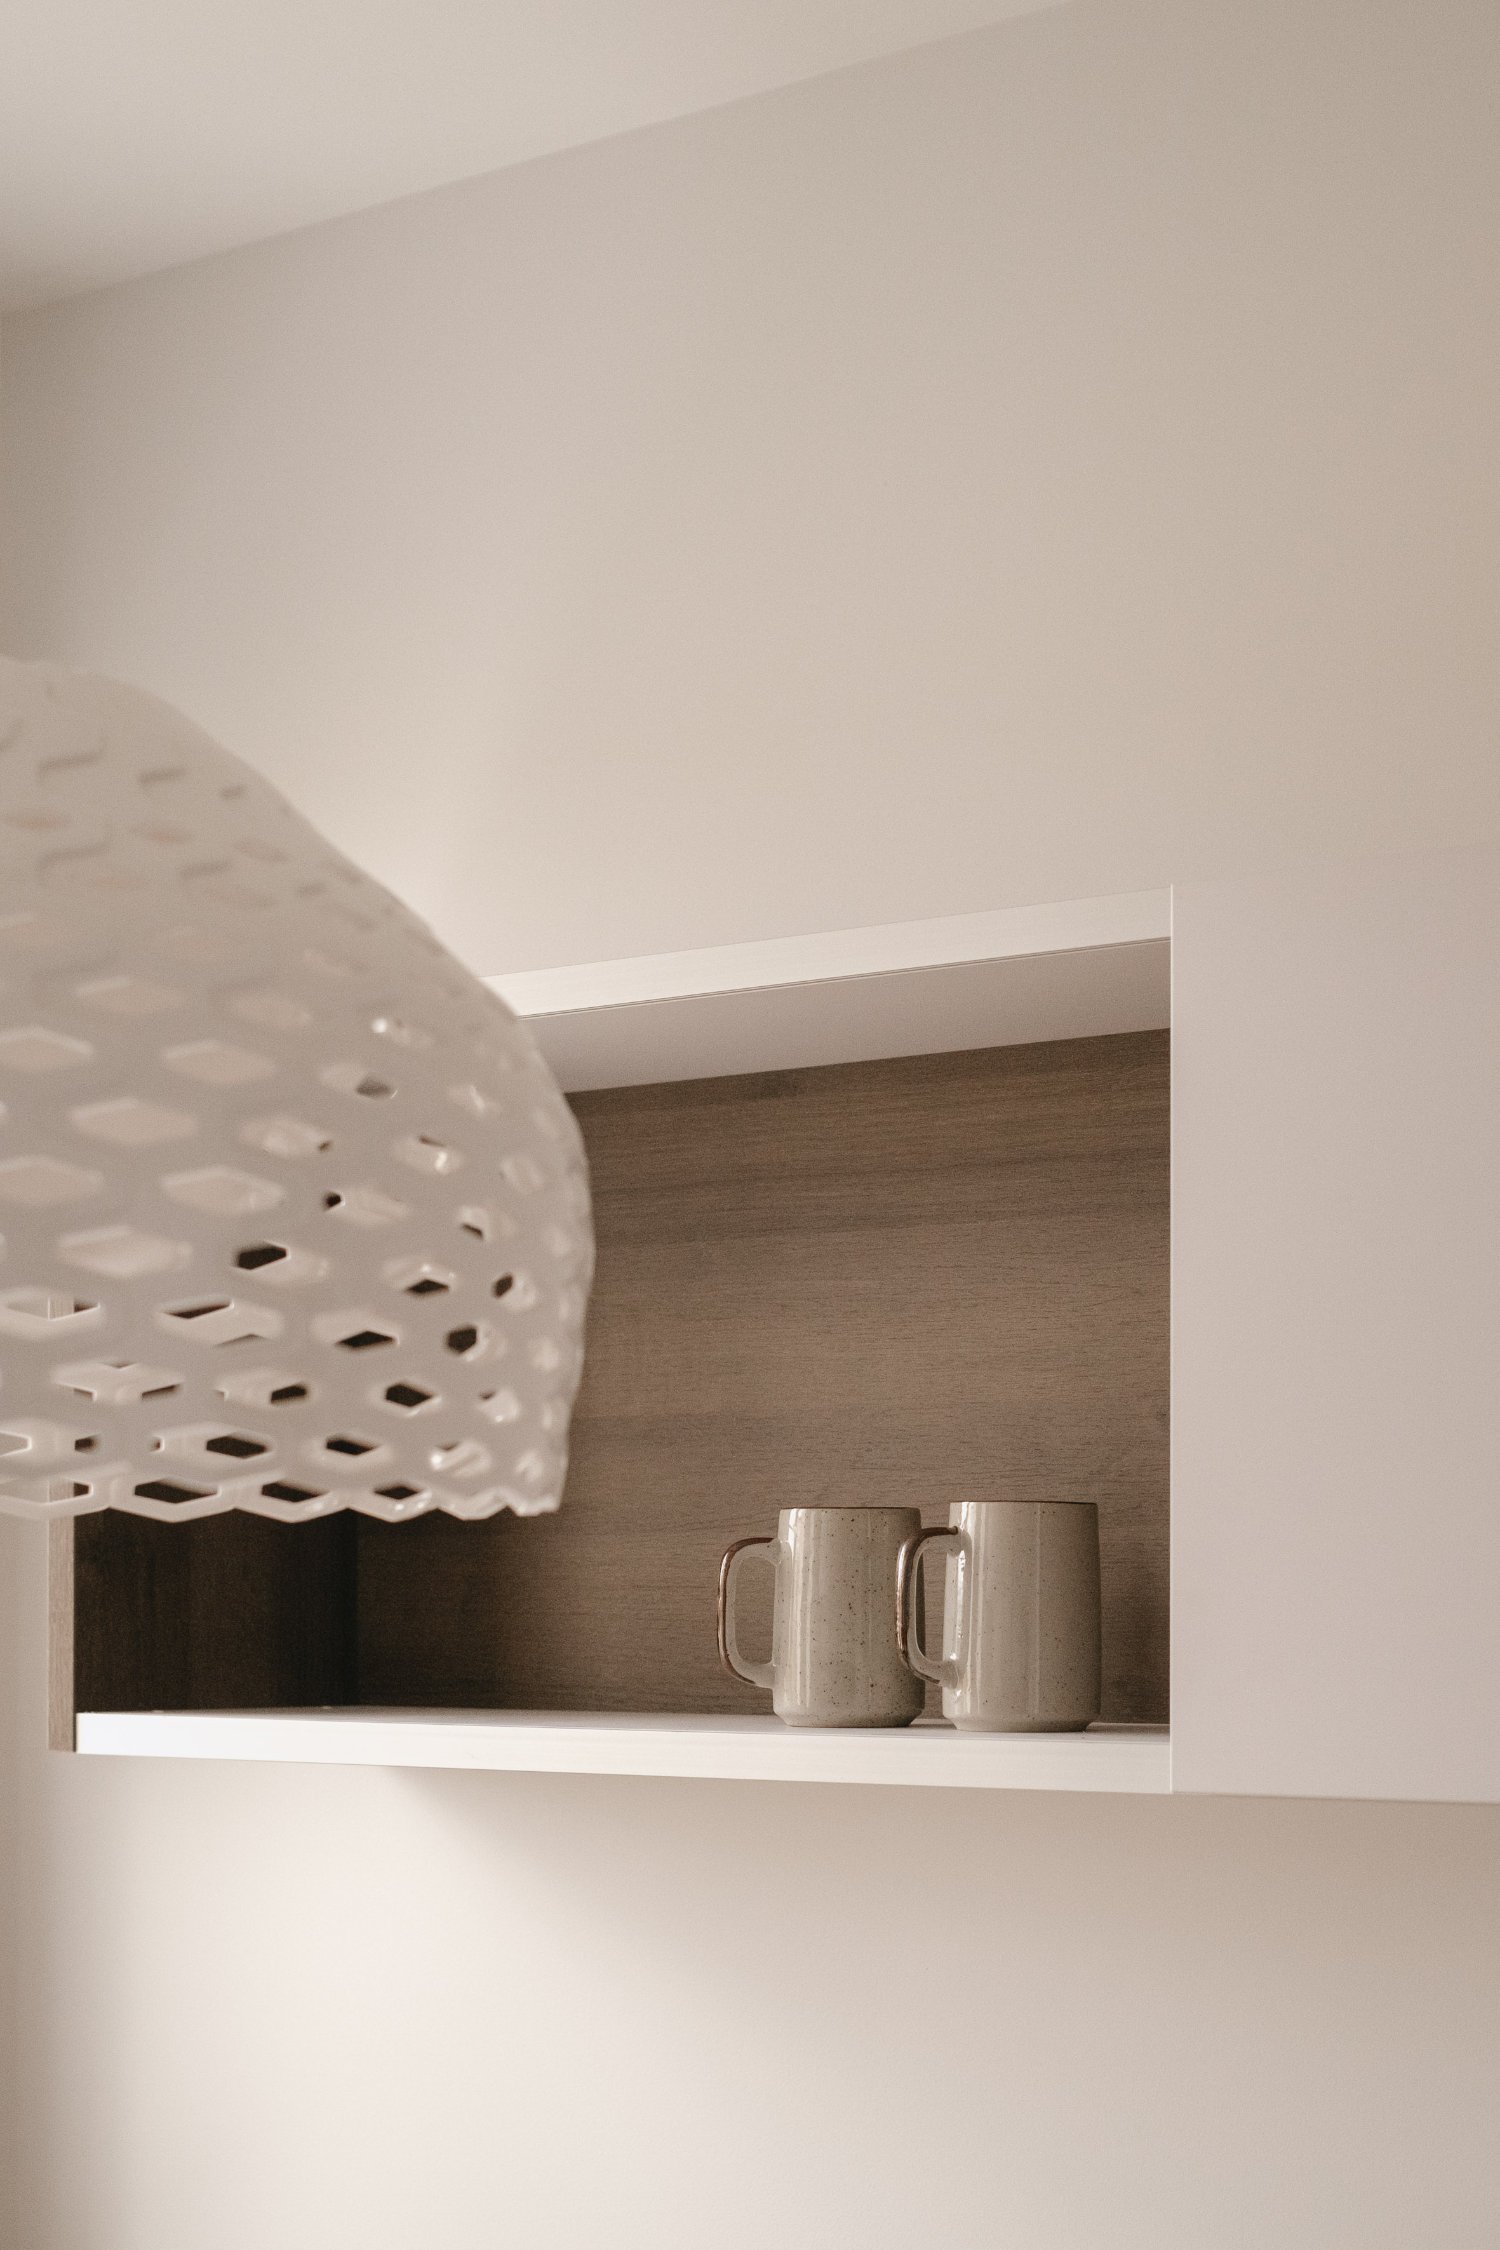 Dettaglio di una nicchia realizzata in cartongesso nel progetto di una cucina, curato dallo studio Elles Interior Design.